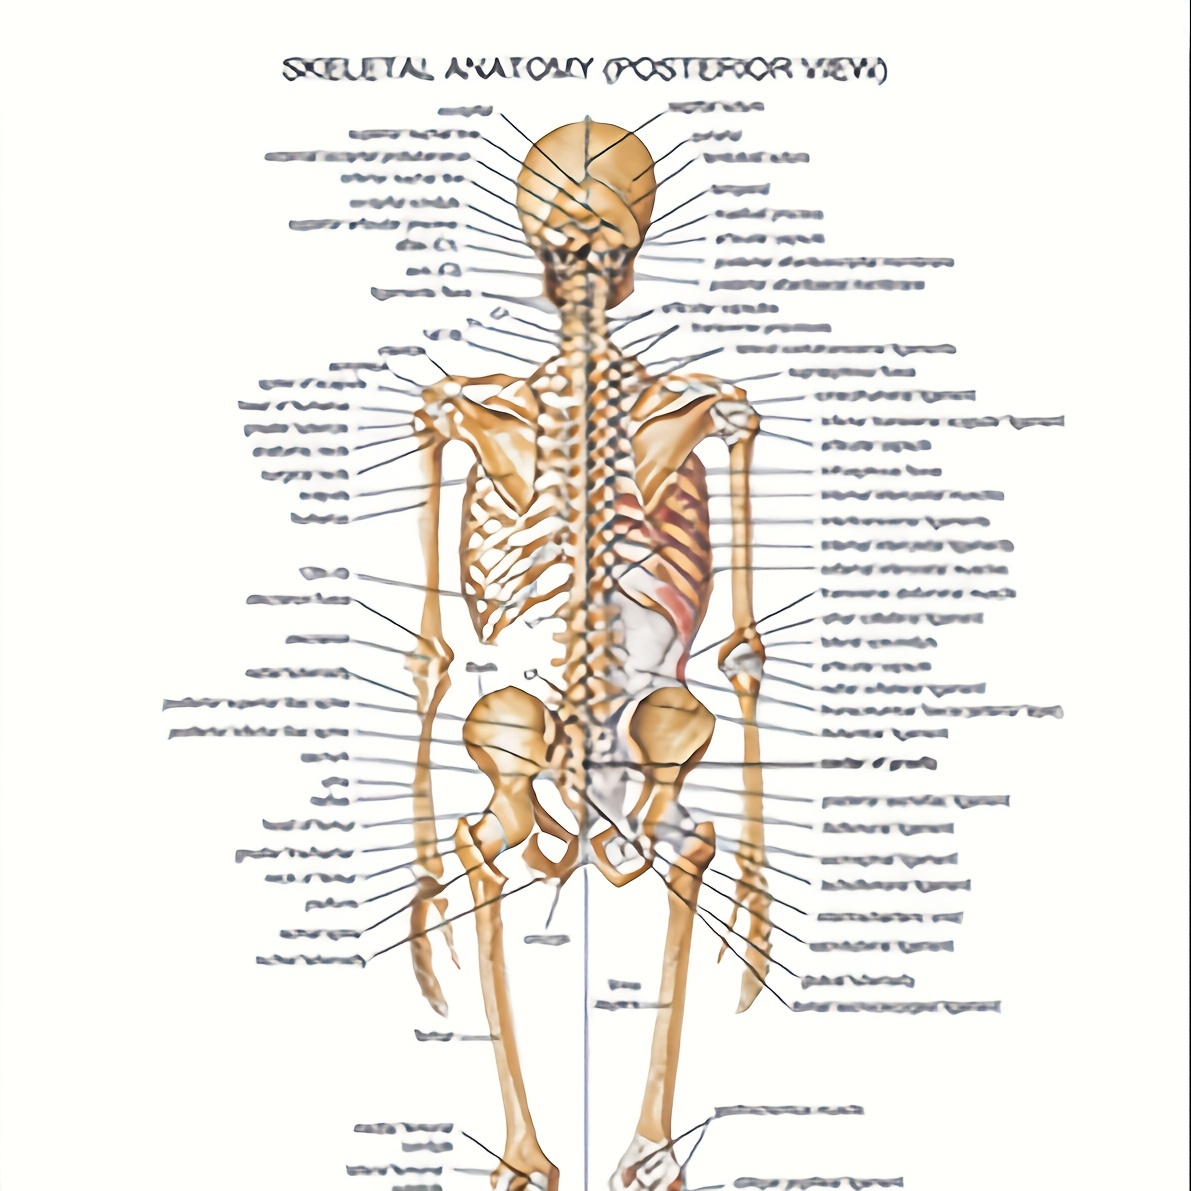 Das Skelett des Menschen Mini-Poster Anatomie 34x24 cm